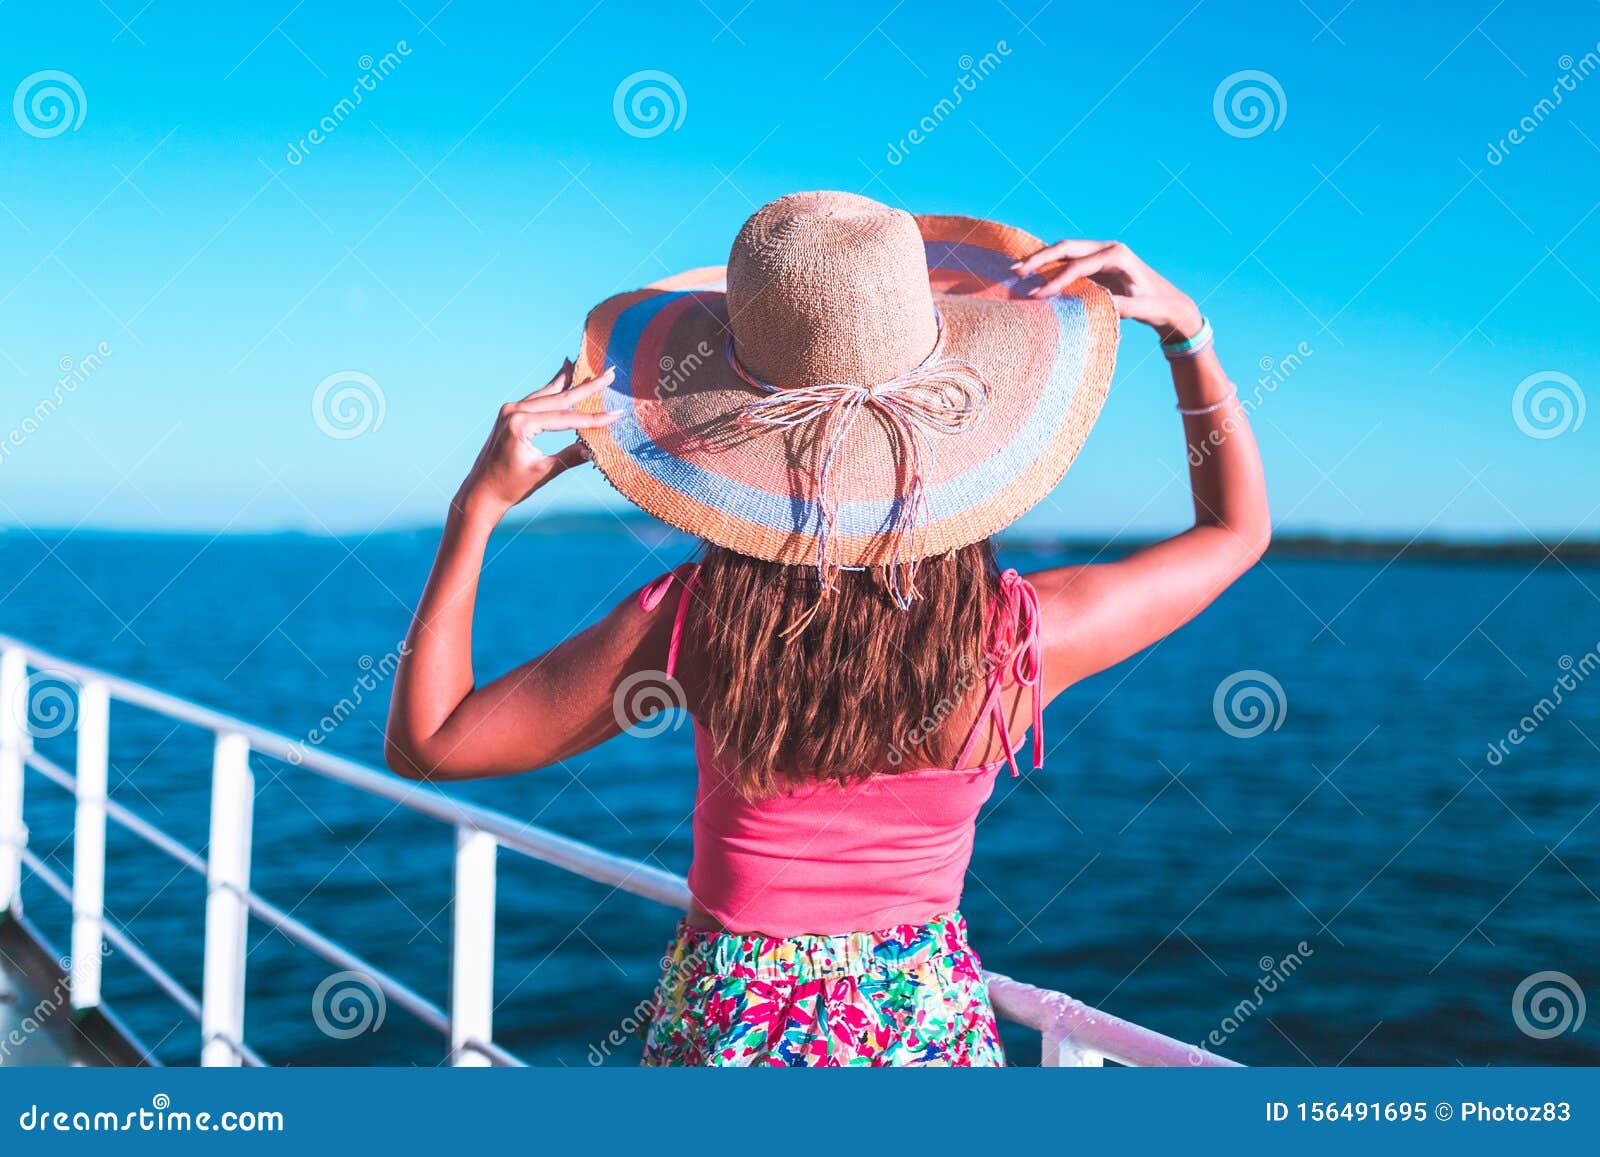 Cruise Ship Vacation Woman Enjoying Travel Vacation At Sea Free